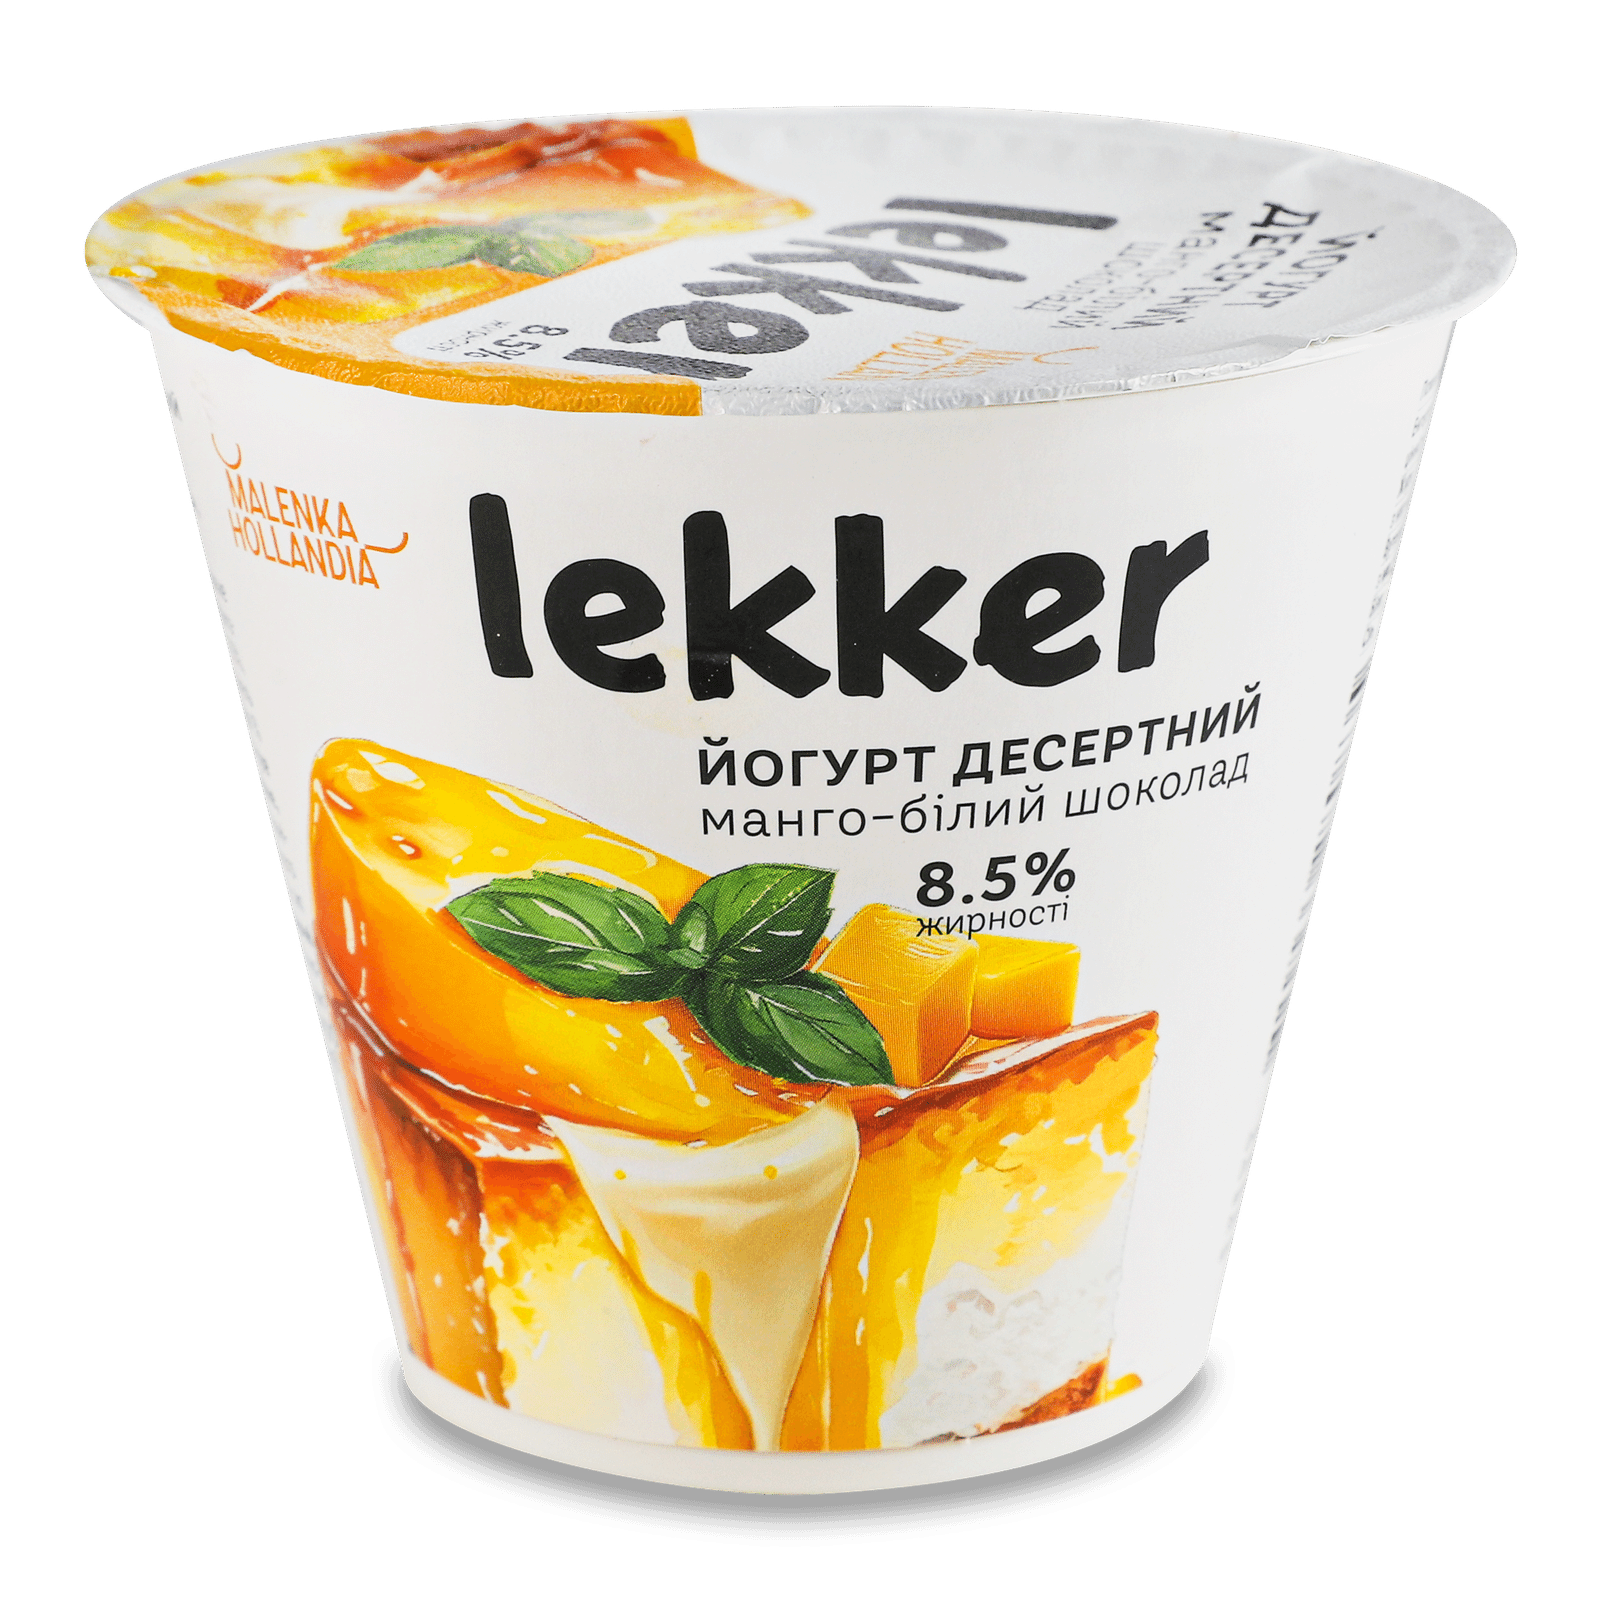 Йогурт Lekker манго-білий шоколад десертний 8,5% стакан - 1